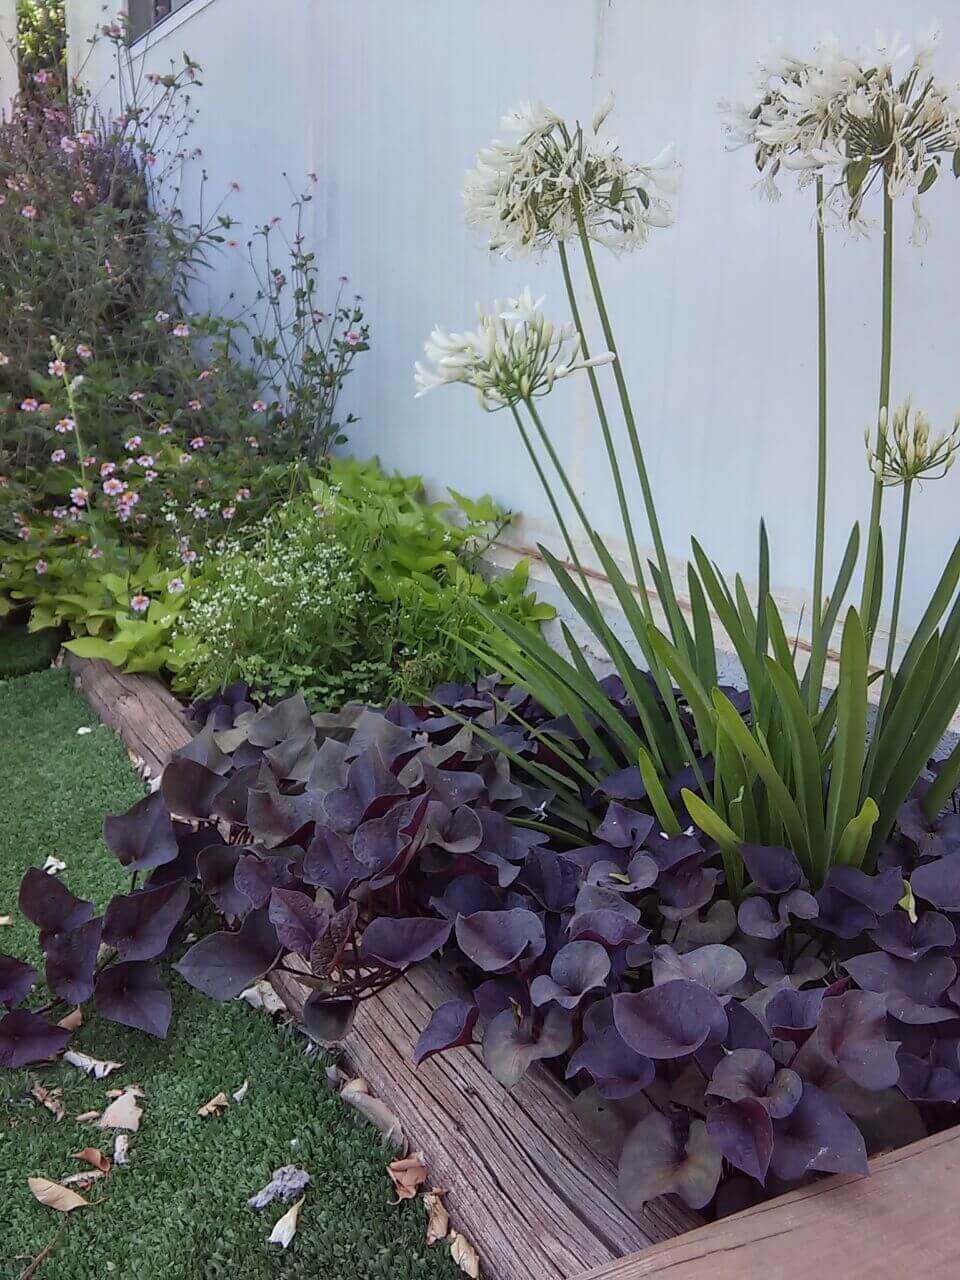 שילוב צמחים- אגפנטוס לבן עם לפופית הבטטה בלקי ודו שן סגול